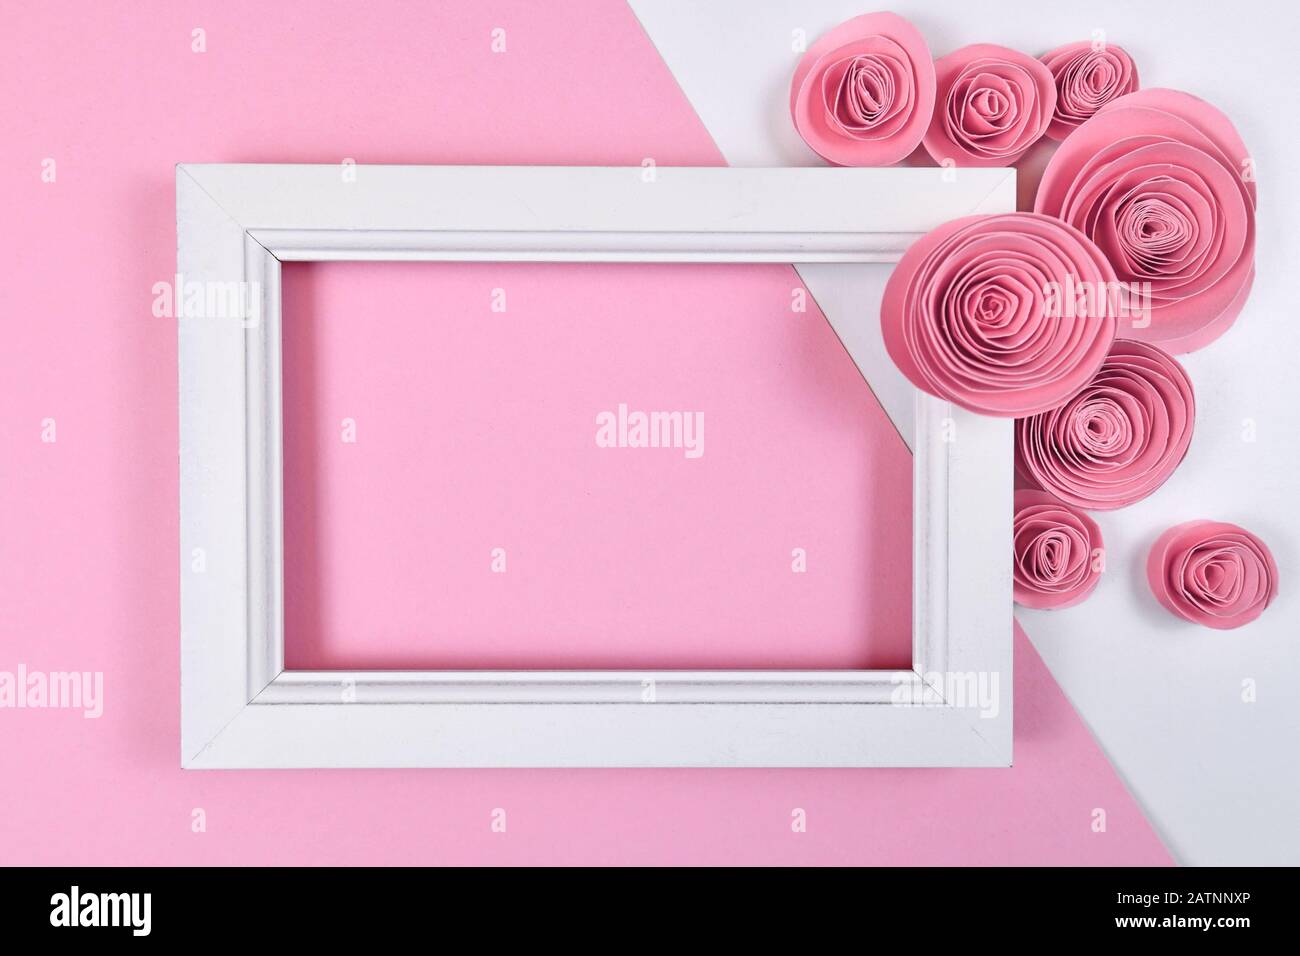 Romantica disposizione piatta con cornice bianca vuota circondata da rose artigianali di carta su sfondo rosa pastello Foto Stock